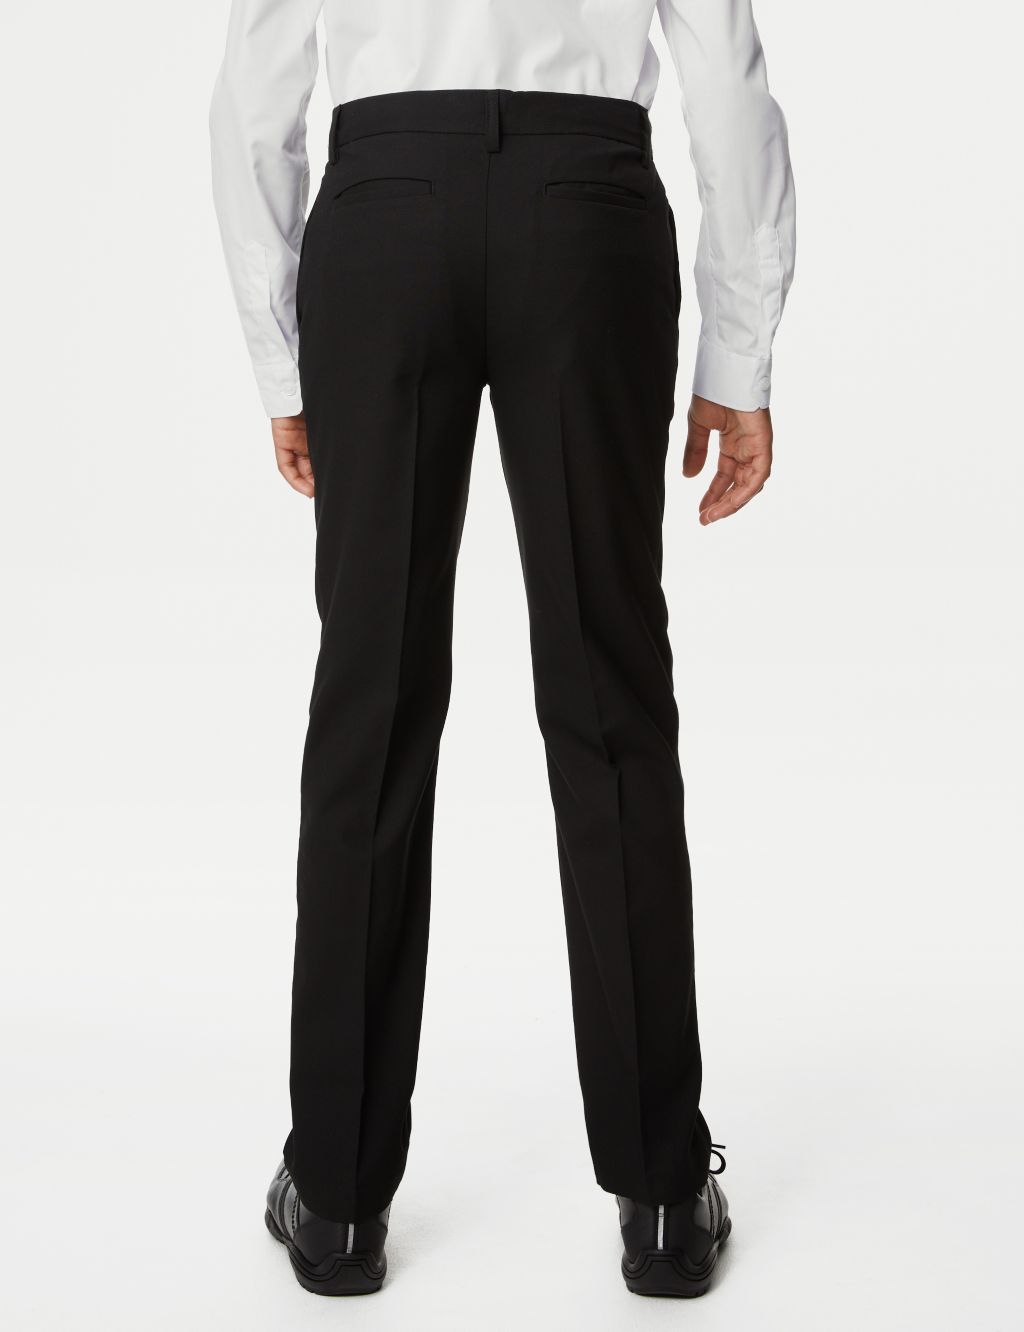 Boys' Slim Leg Plus Waist School Trousers (2-18 Yrs) image 3